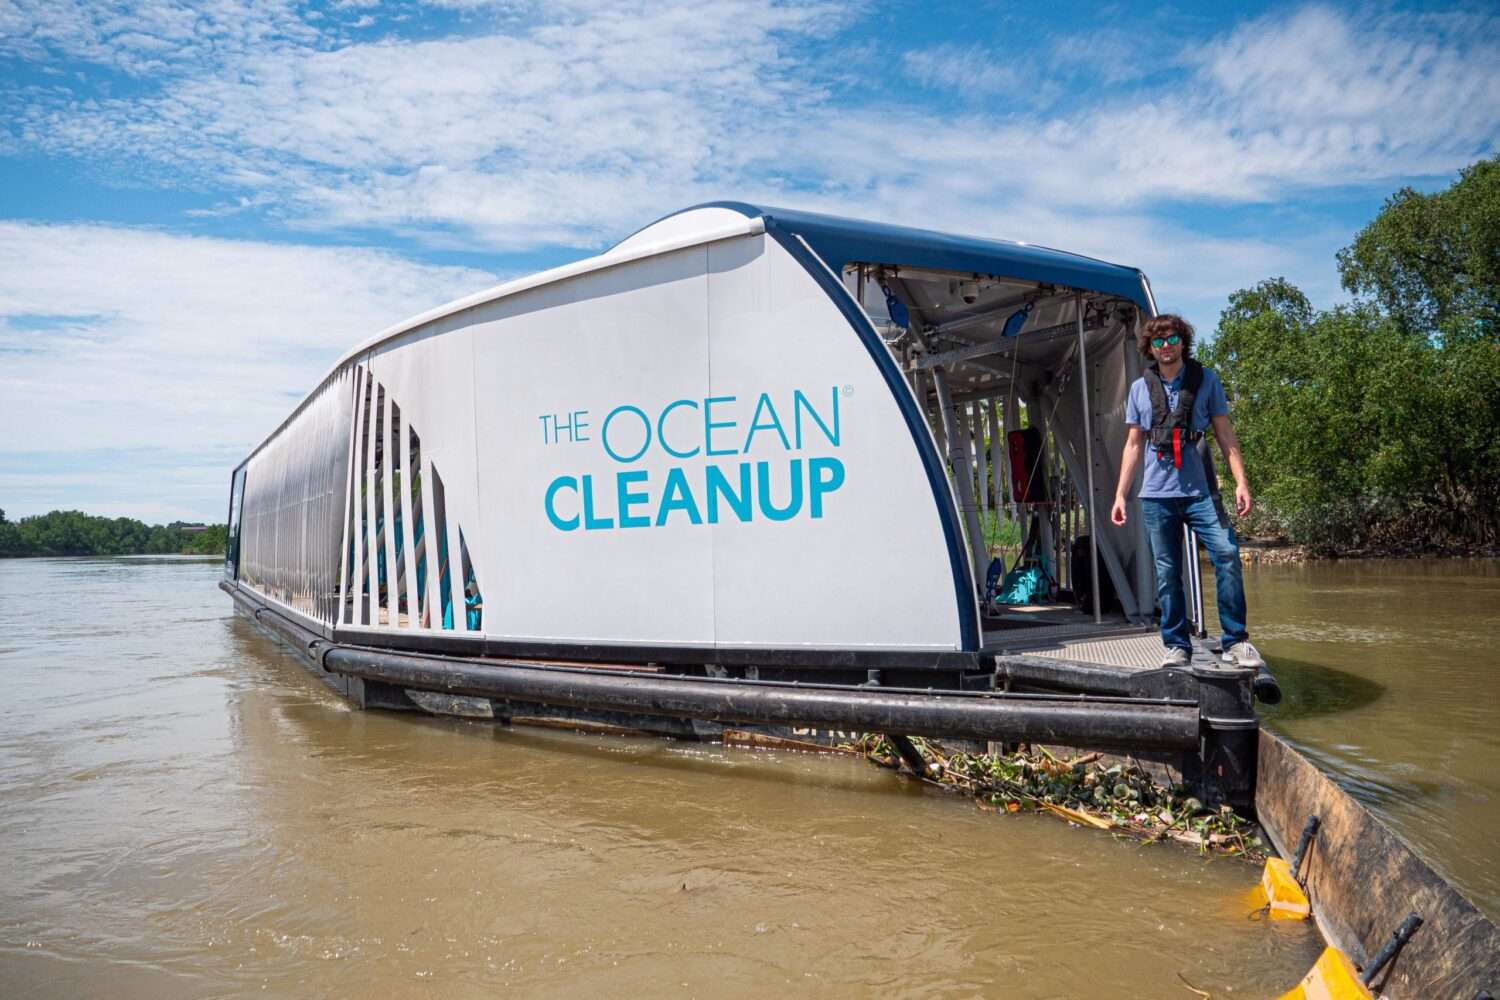 1911-The-Ocean-Cleanup-BoyaninAsia-DvdK-1111502-scaled-1-scaled Schwimmende Müllschlucker: Wie Ocean Cleanup die Meere vom Plastikmüll befreit